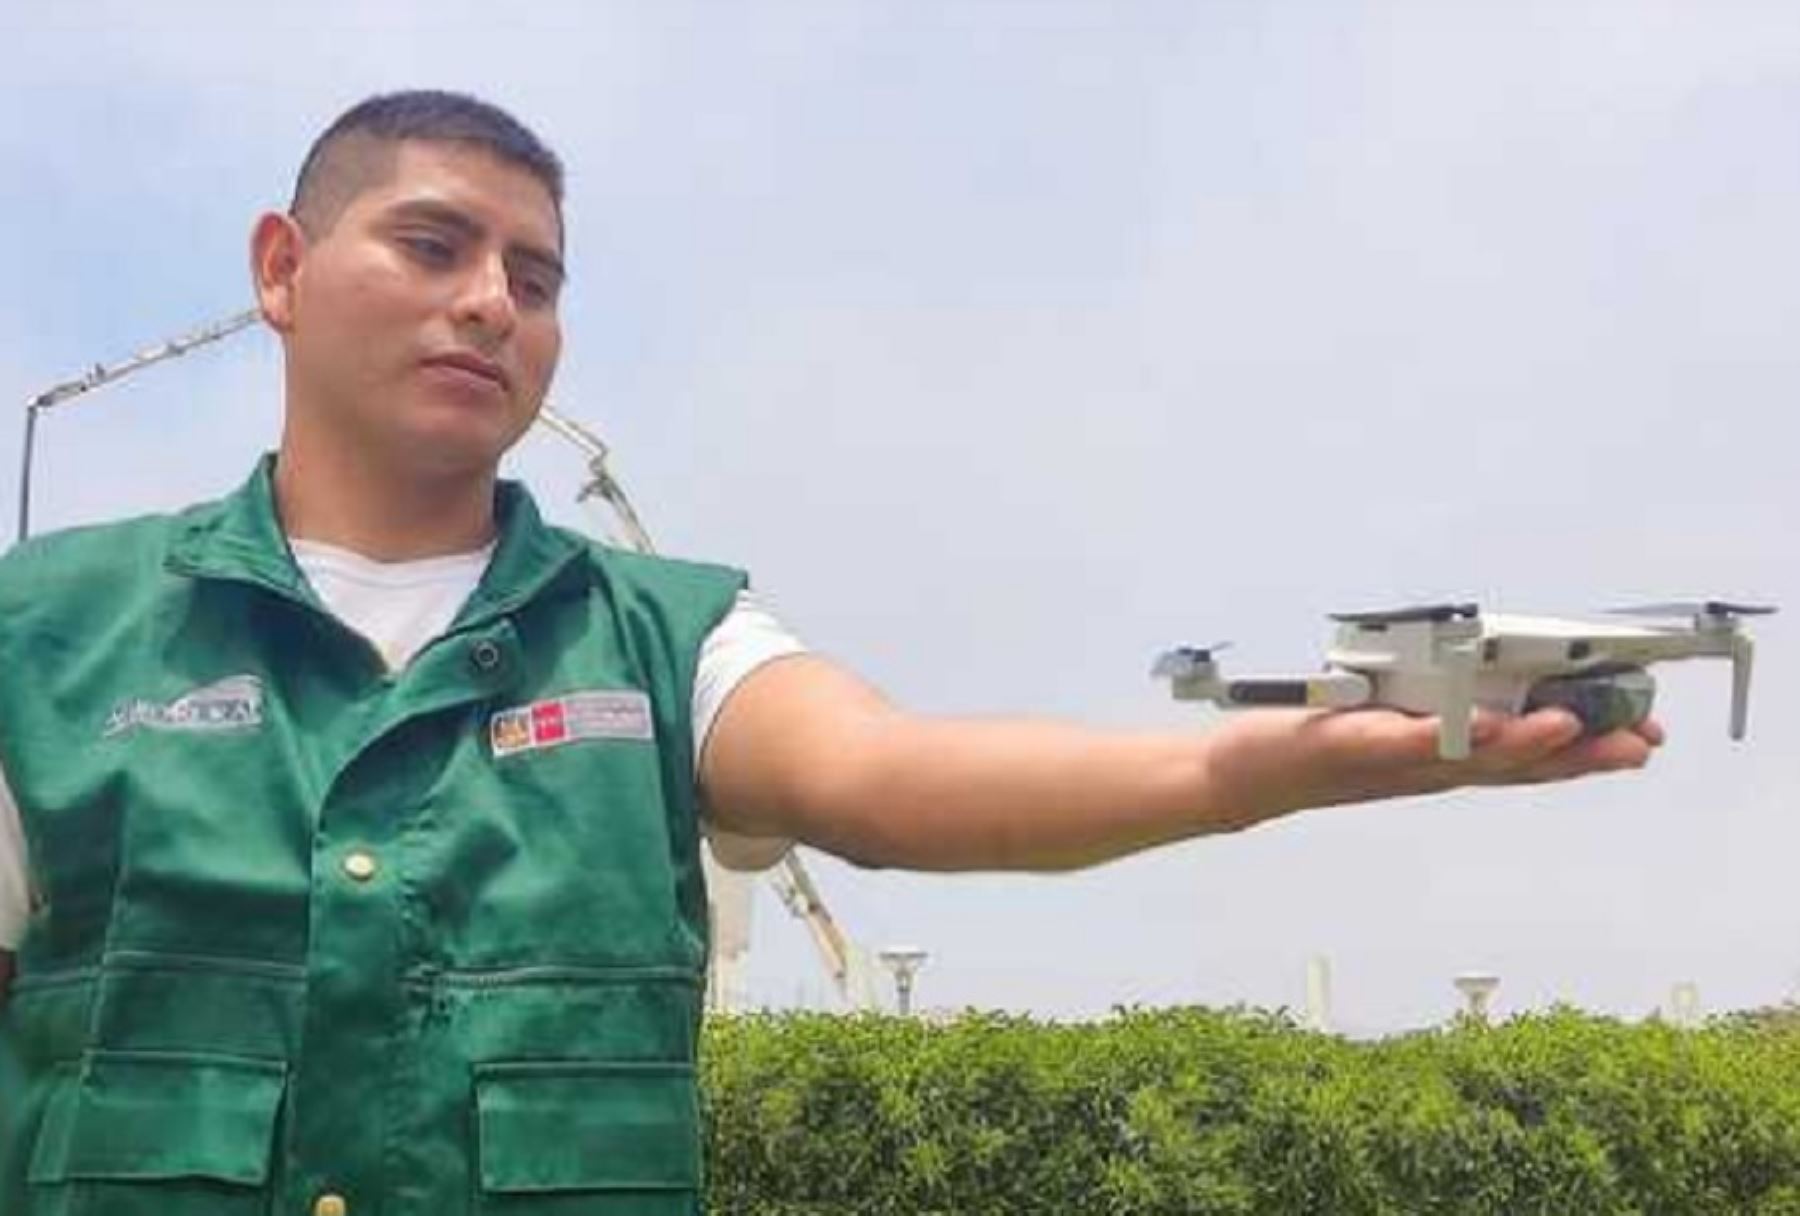 Más de 60 guardaislas del Programa de Desarrollo Productivo Agro Rural serán capacitados en el uso de vehículos aéreos no tripulados o drones, con el objetivo de monitorear la biología reproductiva de las aves guaneras y actividades de pesca ilícita, entre otros.